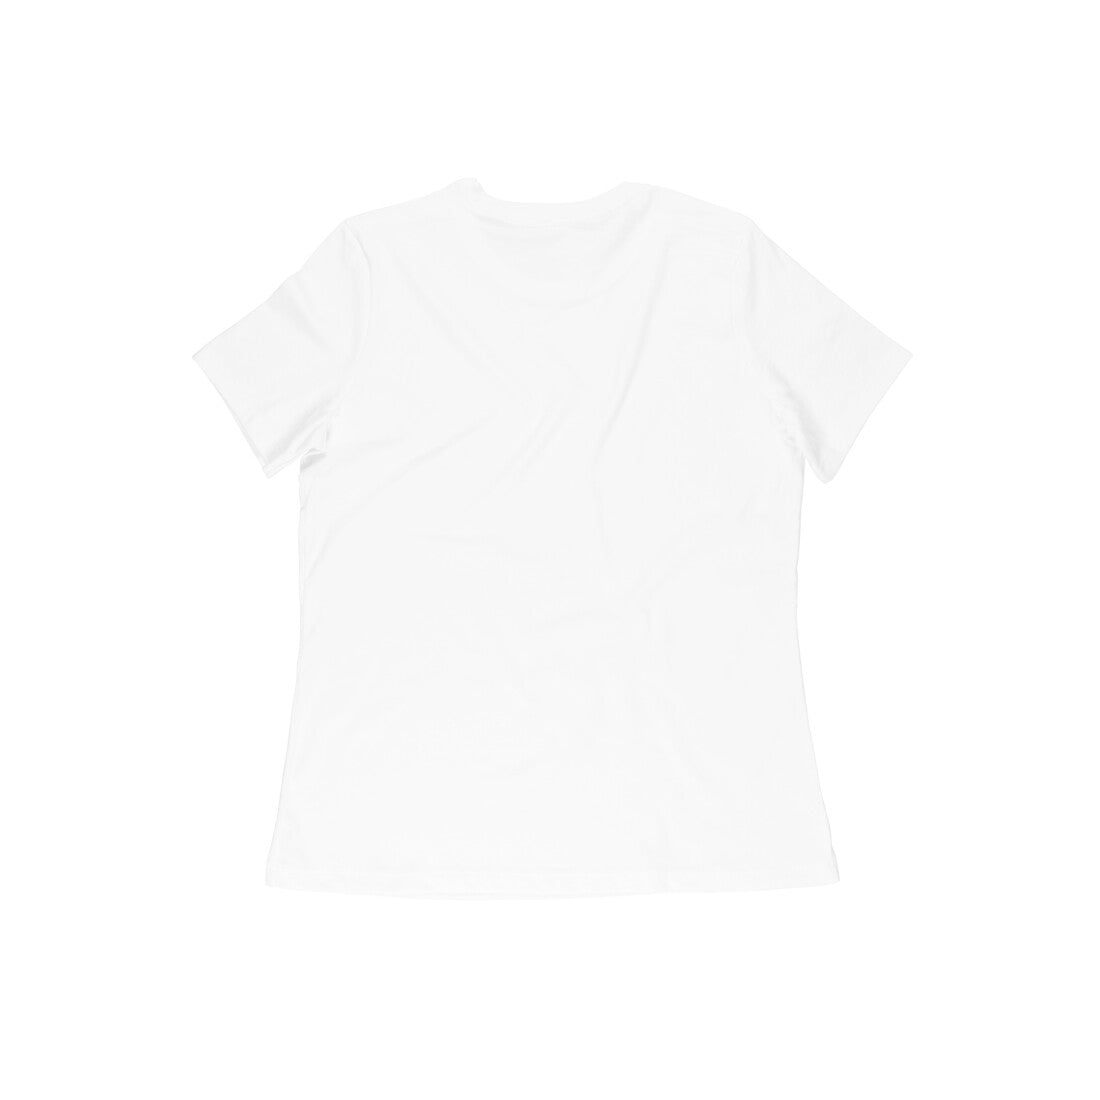 Trenfort Workout T-shirt for Women